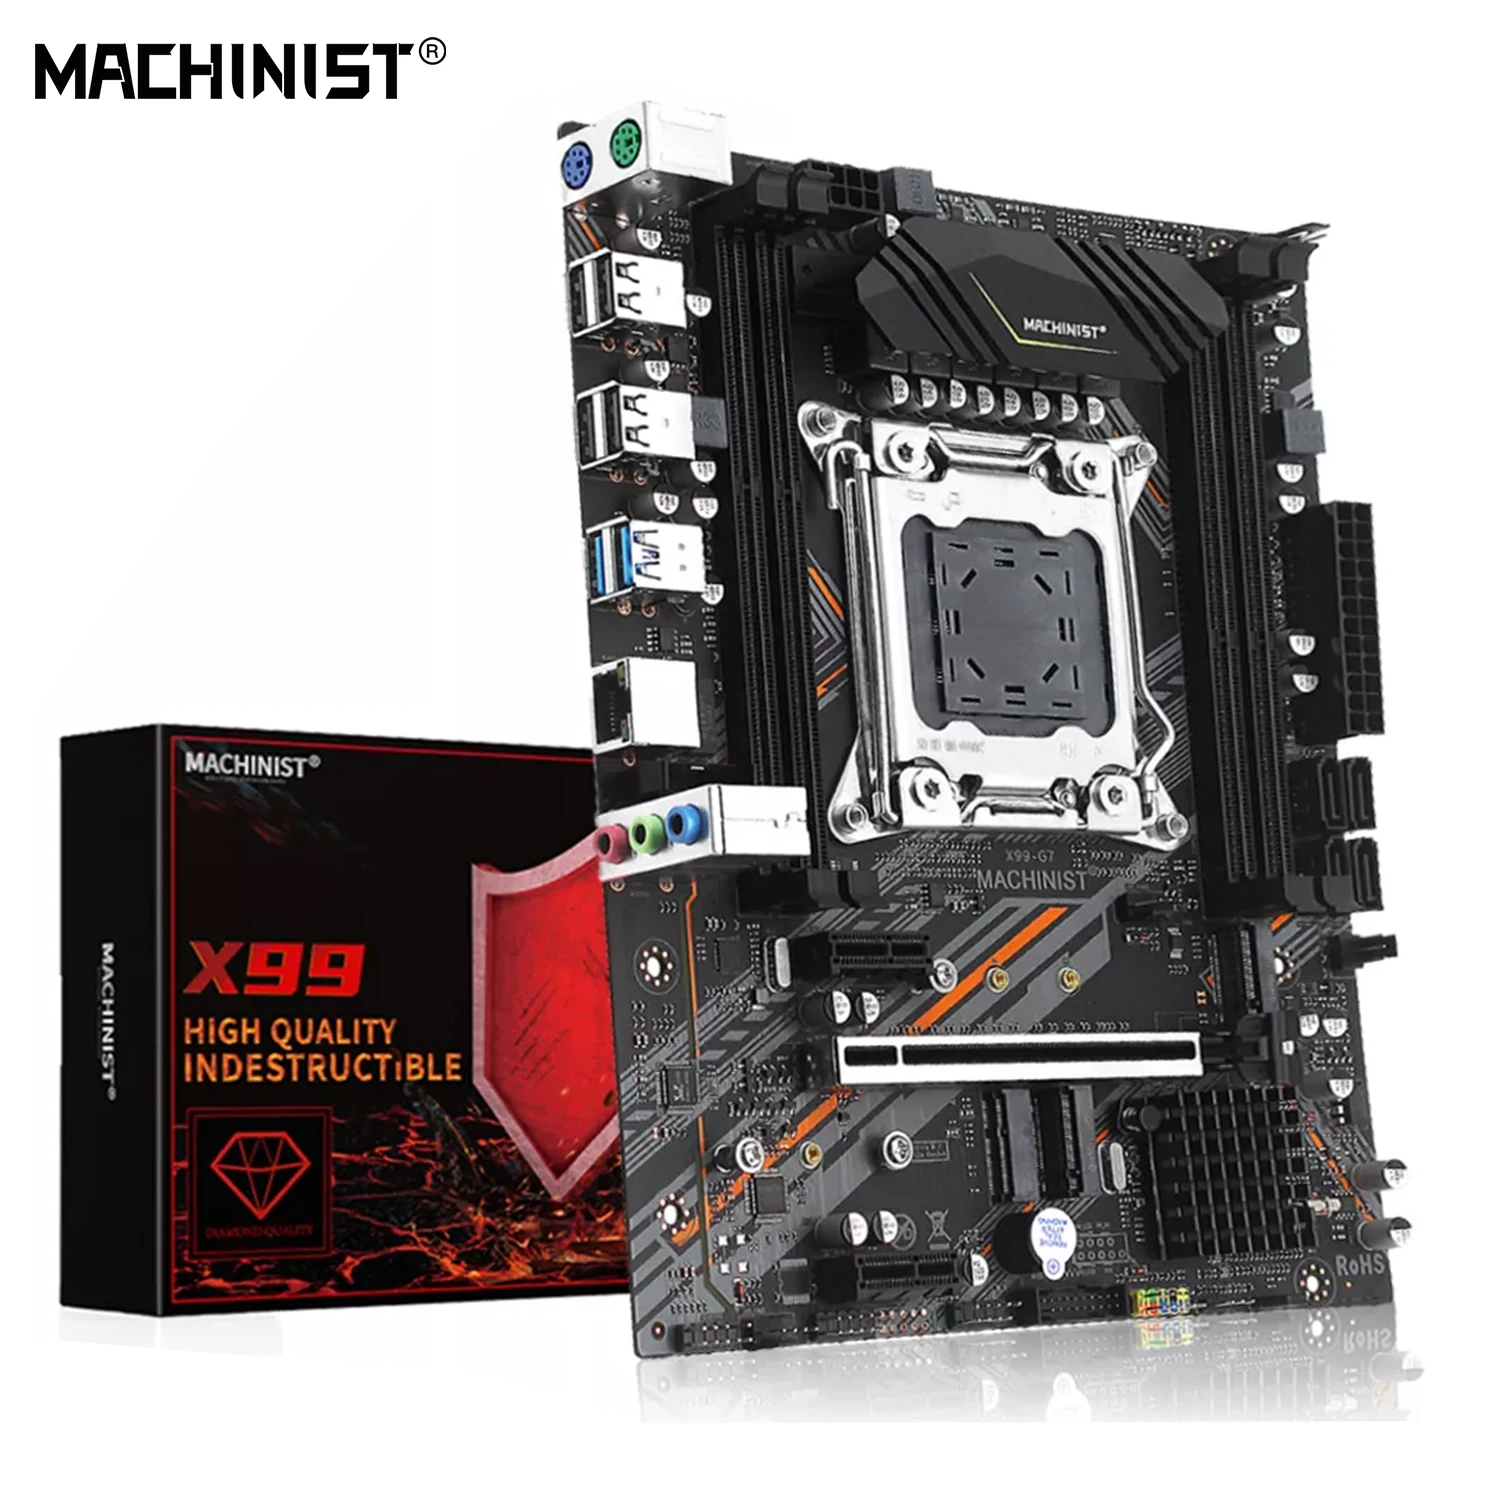 MACHINIST-placa base X99 LGA 2011-3, compatible con Xeon E5 2666 2696 2678 V3 CPU DDR3 ECC RAM M.2 NVME, cuatro canales, USB 3,0 X99-G7